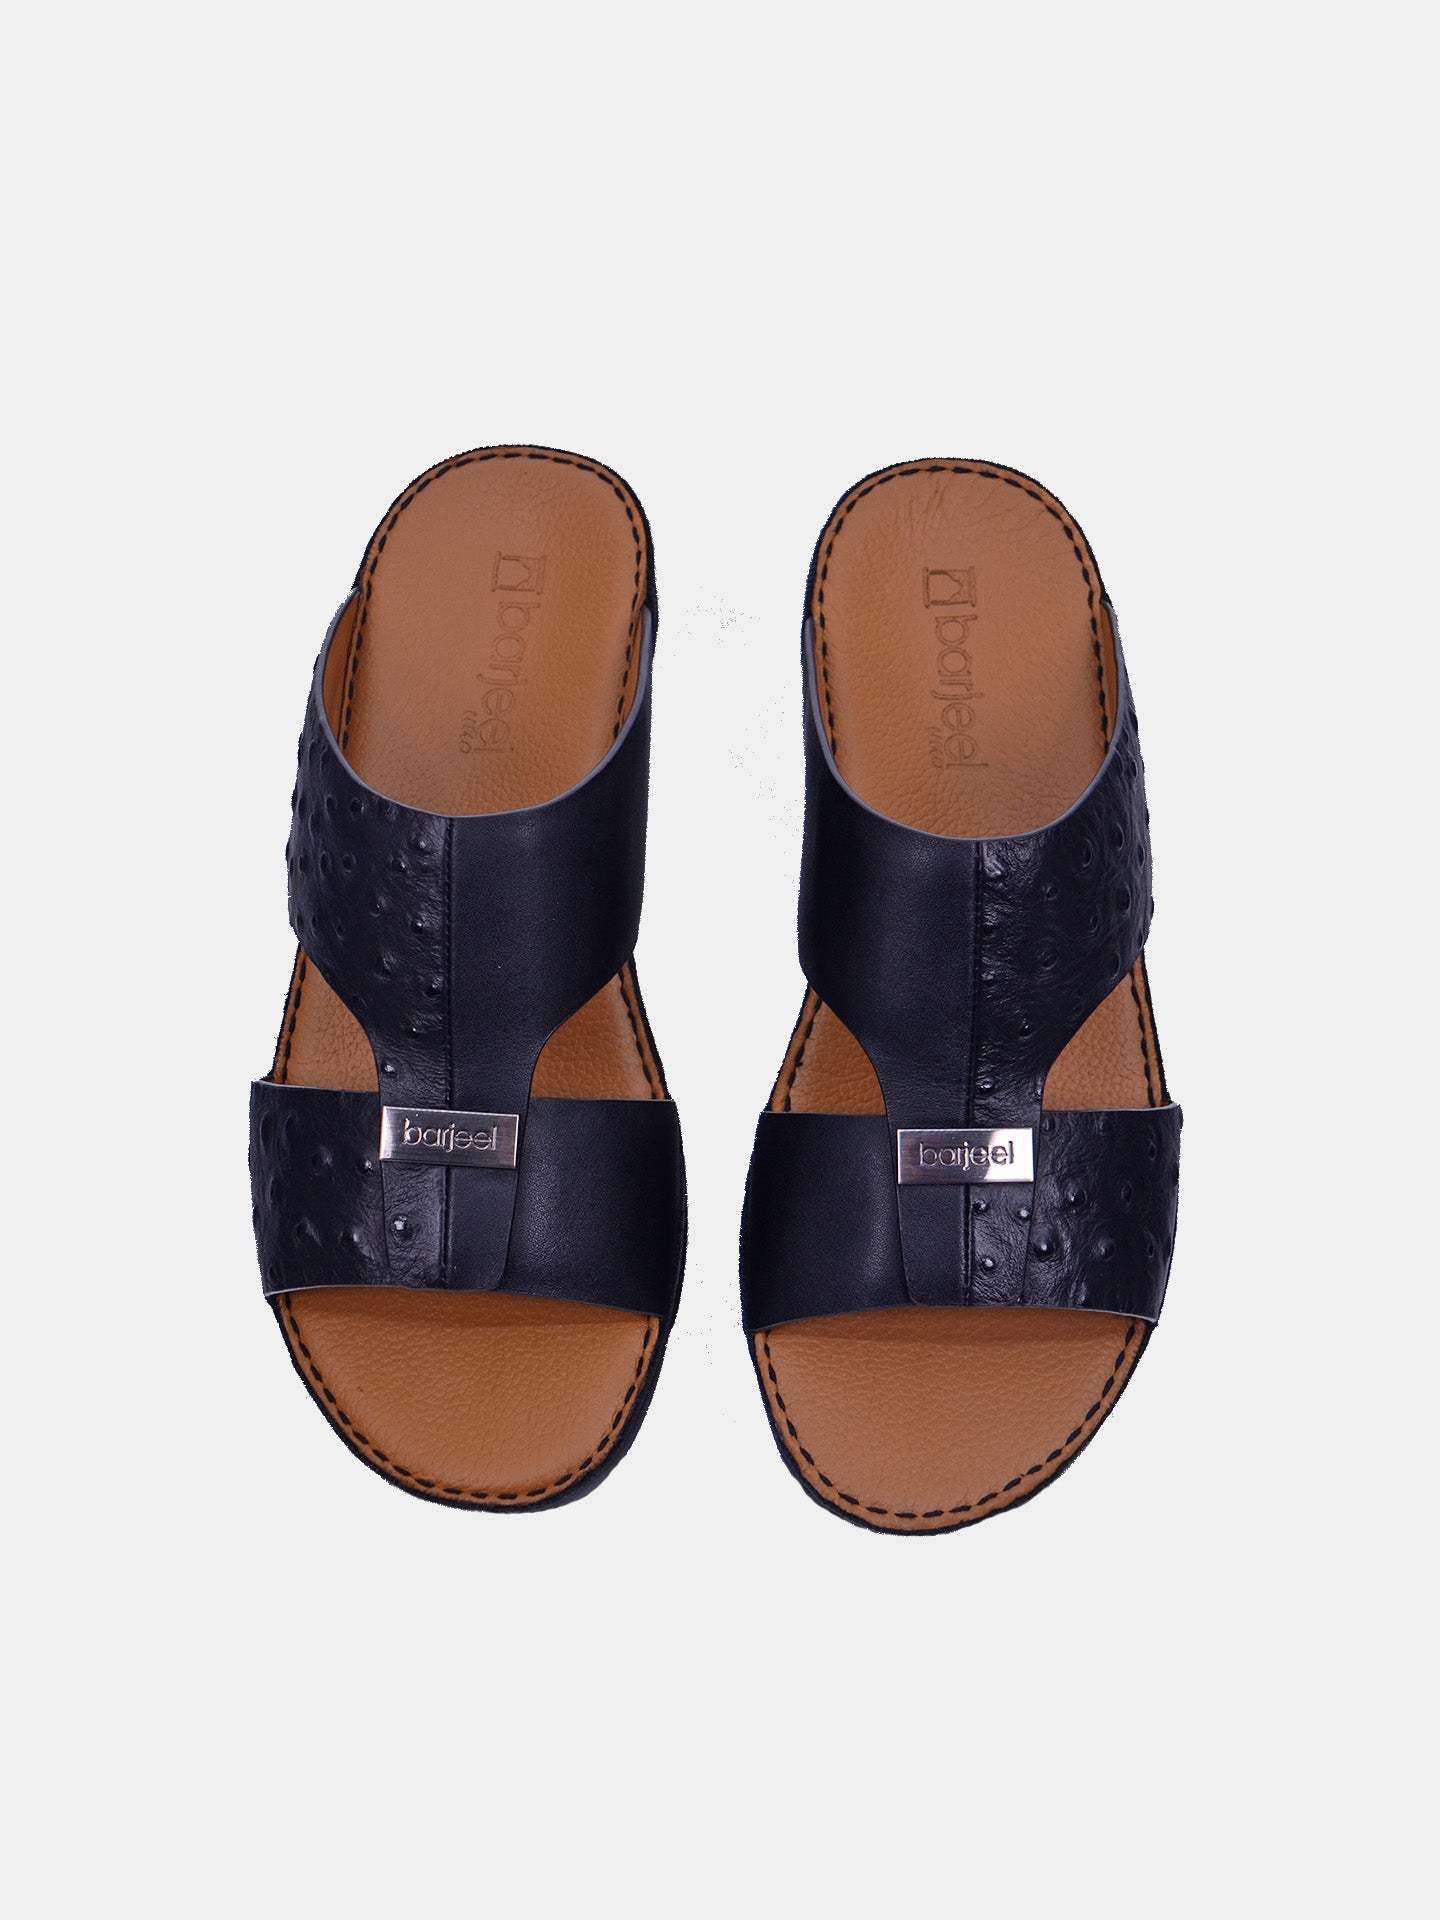 Barjeel Uno SP-188 Men's Arabic Sandals #color_Black